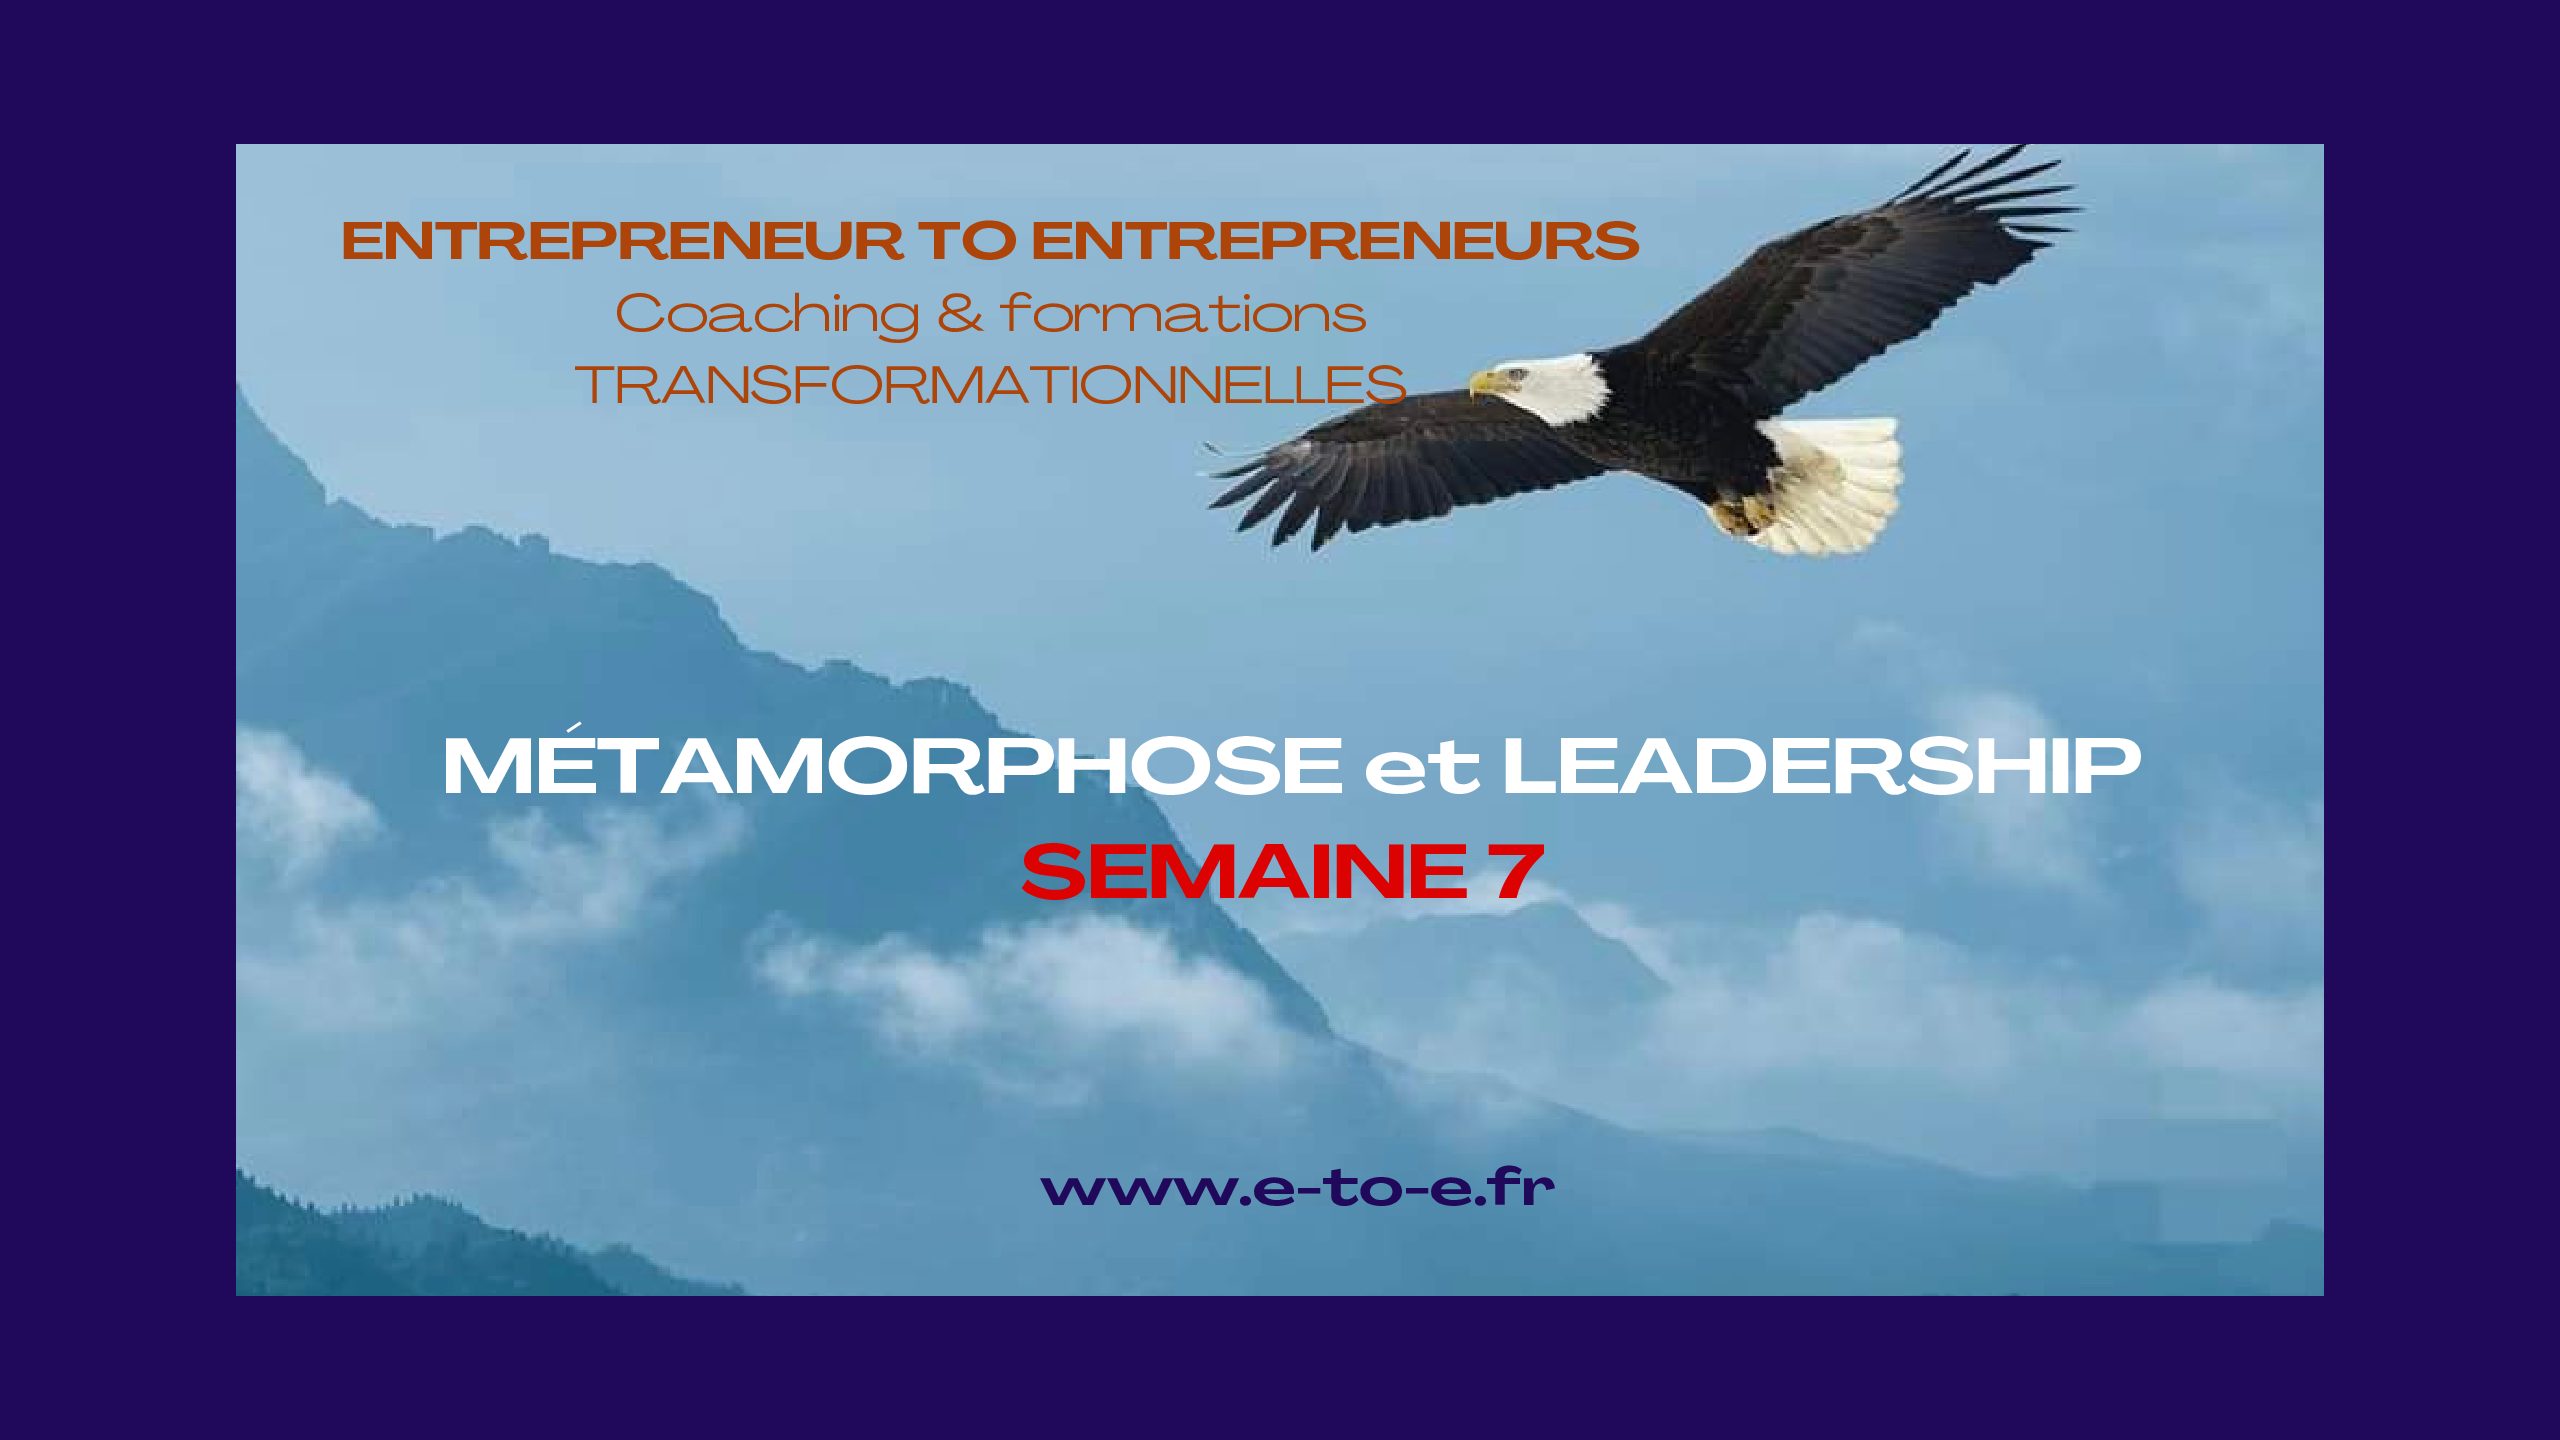 MÉTAMORPHOSE & LEADERSHIP SEMAINE 7